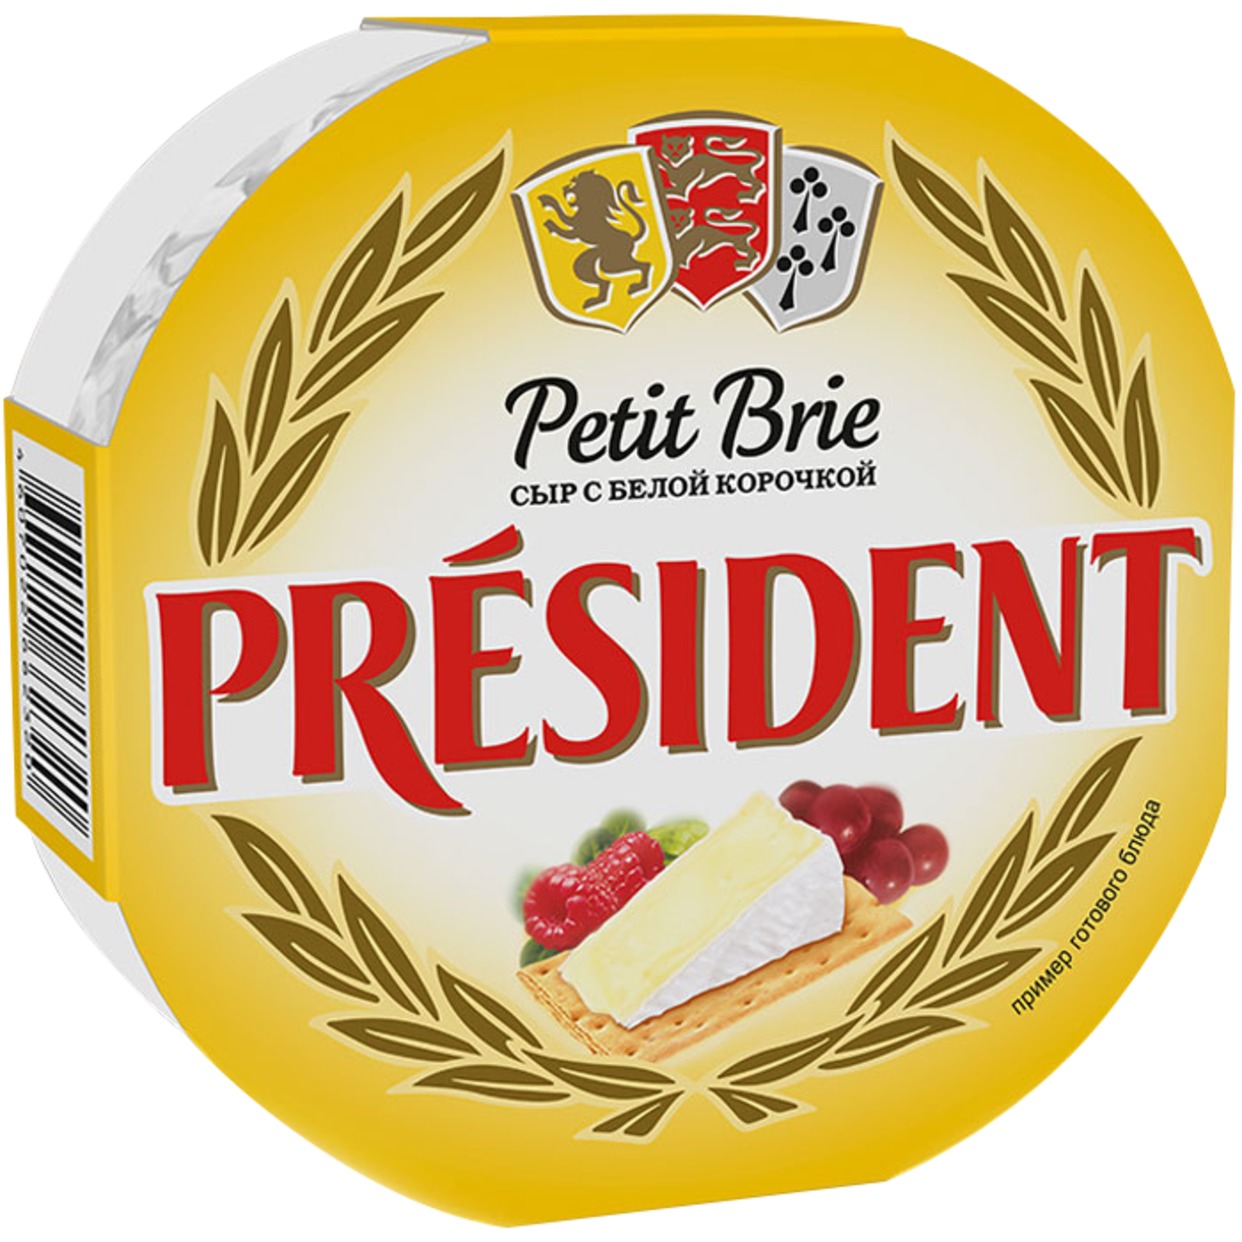 Сыр Petit Brie, мягкий, с белой плесенью, President, 125 г